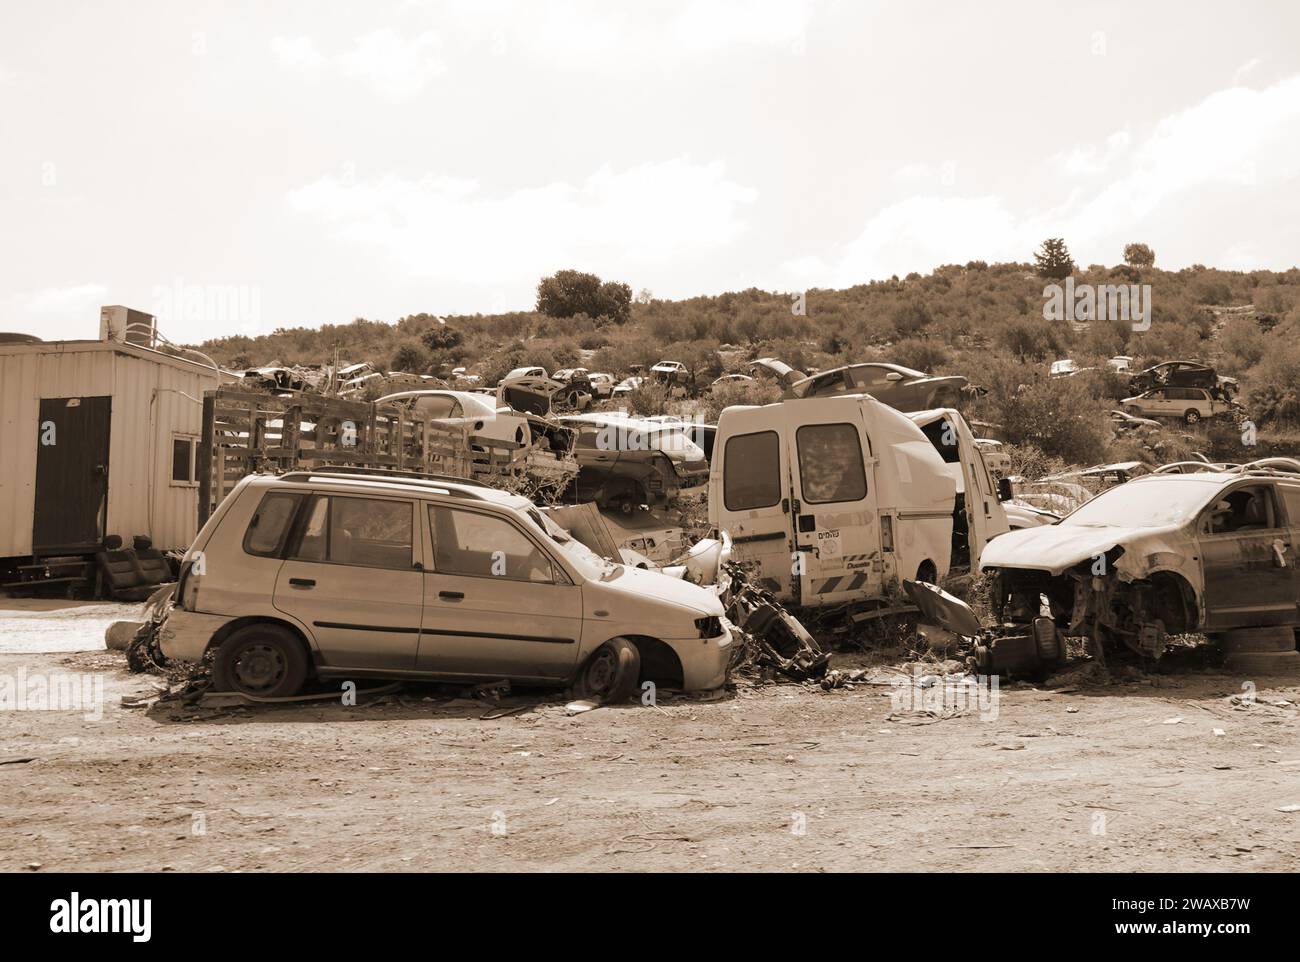 Junkyard de benne de voiture. Pile de voitures abandonnées sur la junkyard. Israël. Palestine. Barta. Effet sépia Banque D'Images